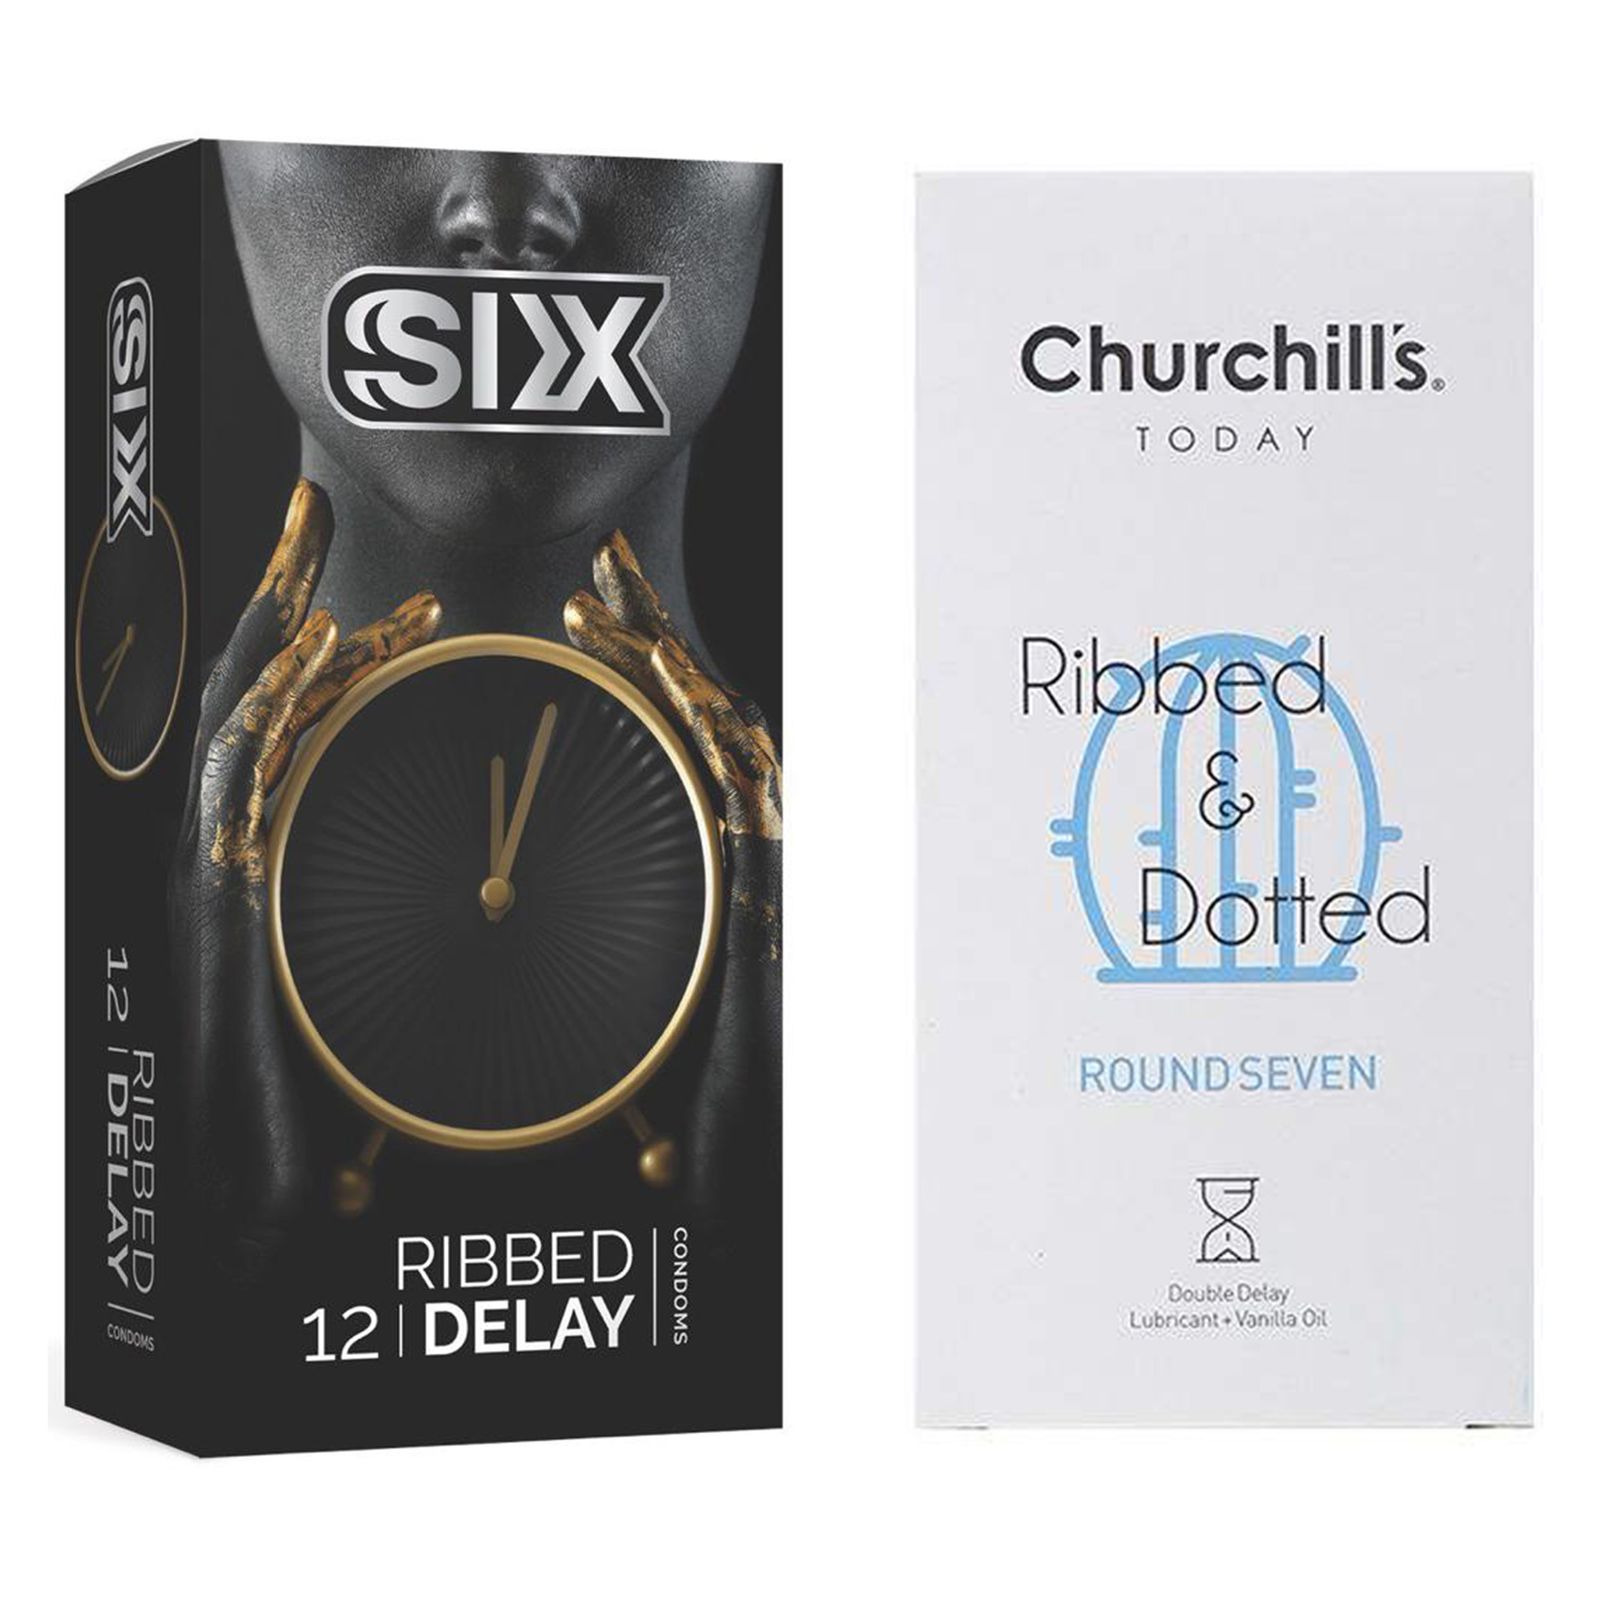 کاندوم چرچیلز مدل Round Seven بسته 12 عددی به همراه کاندوم سیکس مدل تاخیری شیاردار بسته 12 عددی -  - 1